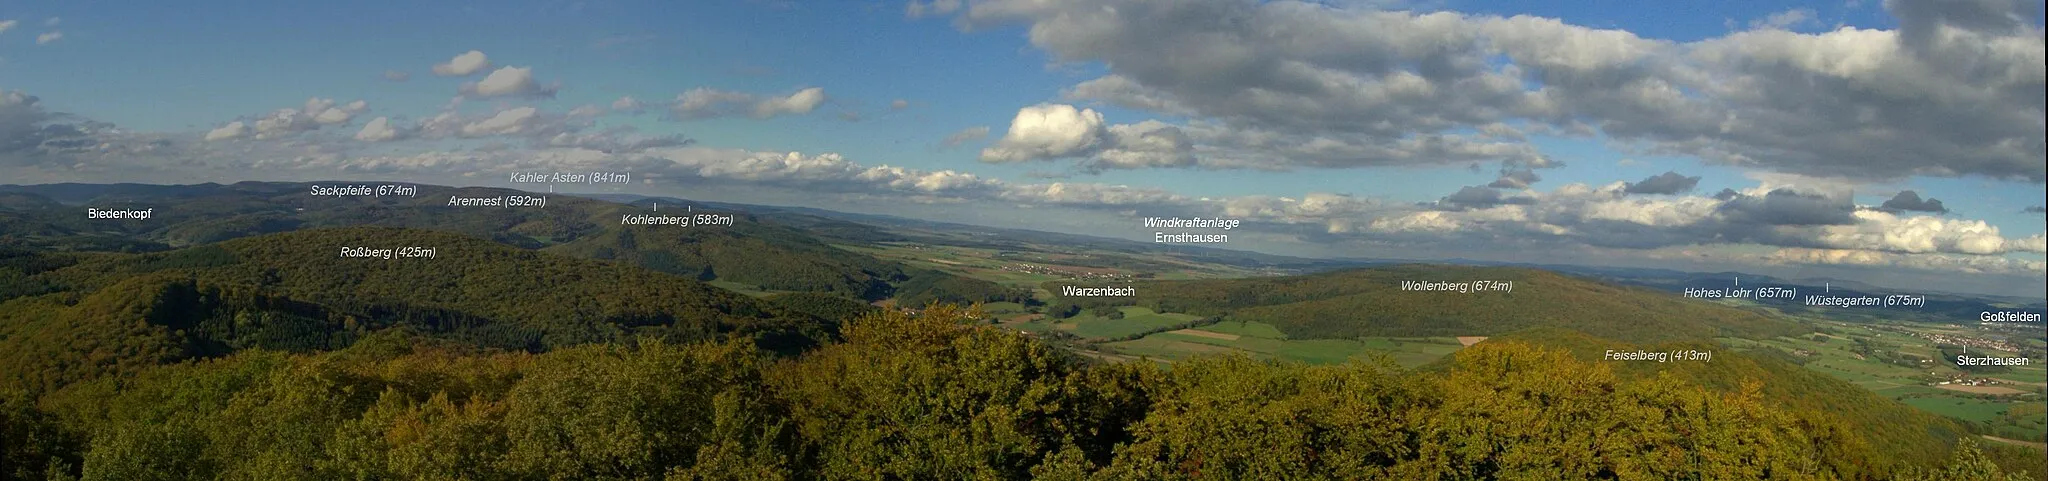 Photo showing: Blick vom 498 m hohen Rimberg im Gladenbacher Bergland auf das Rothaargebirge mit der Sackpfeife (674 m) und seinen Vorhöhen Arennest (592 m), Kohlenberg (583 m) und Wollenberg (474 m) im Norden. Ganz rechts im Hintergrund der 35 km entfernte Kellerwald mit dem Hohen Lohr (657 m) und dem Wüstegarten (675 m).